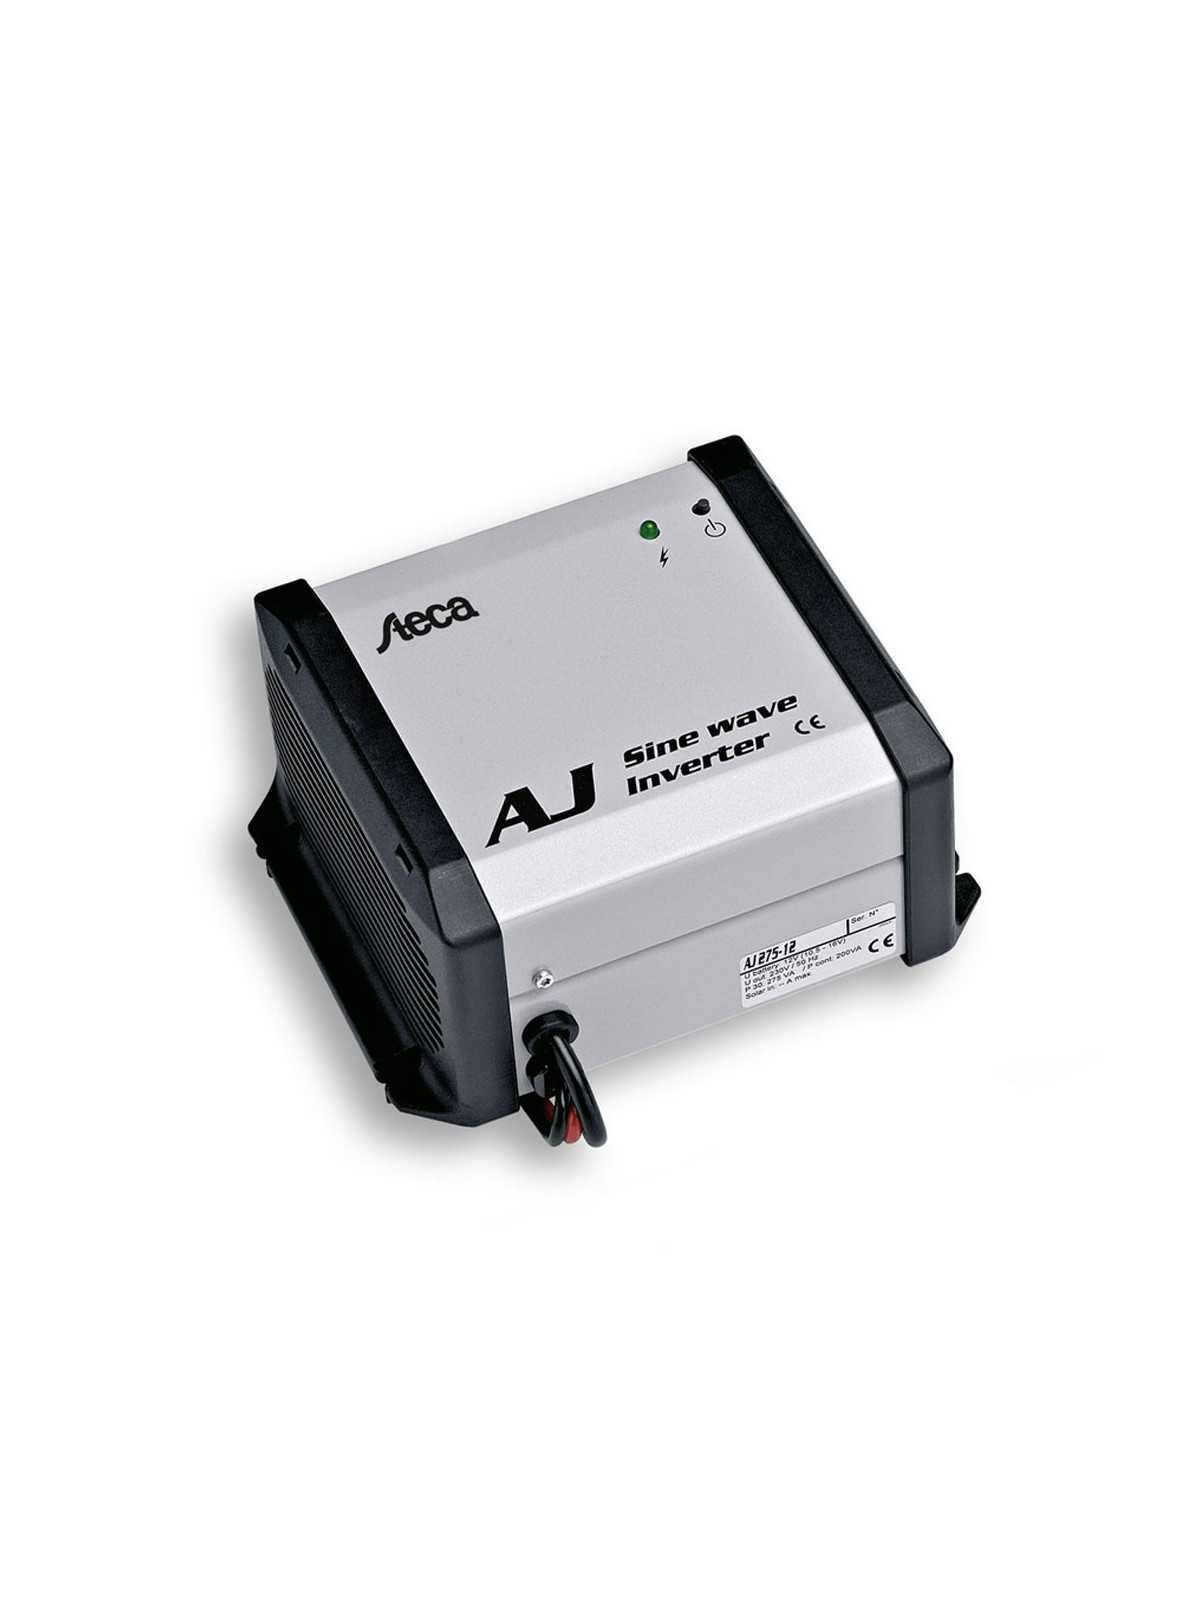 STECA AJ 275 converter from 12V200W to 24V2400W